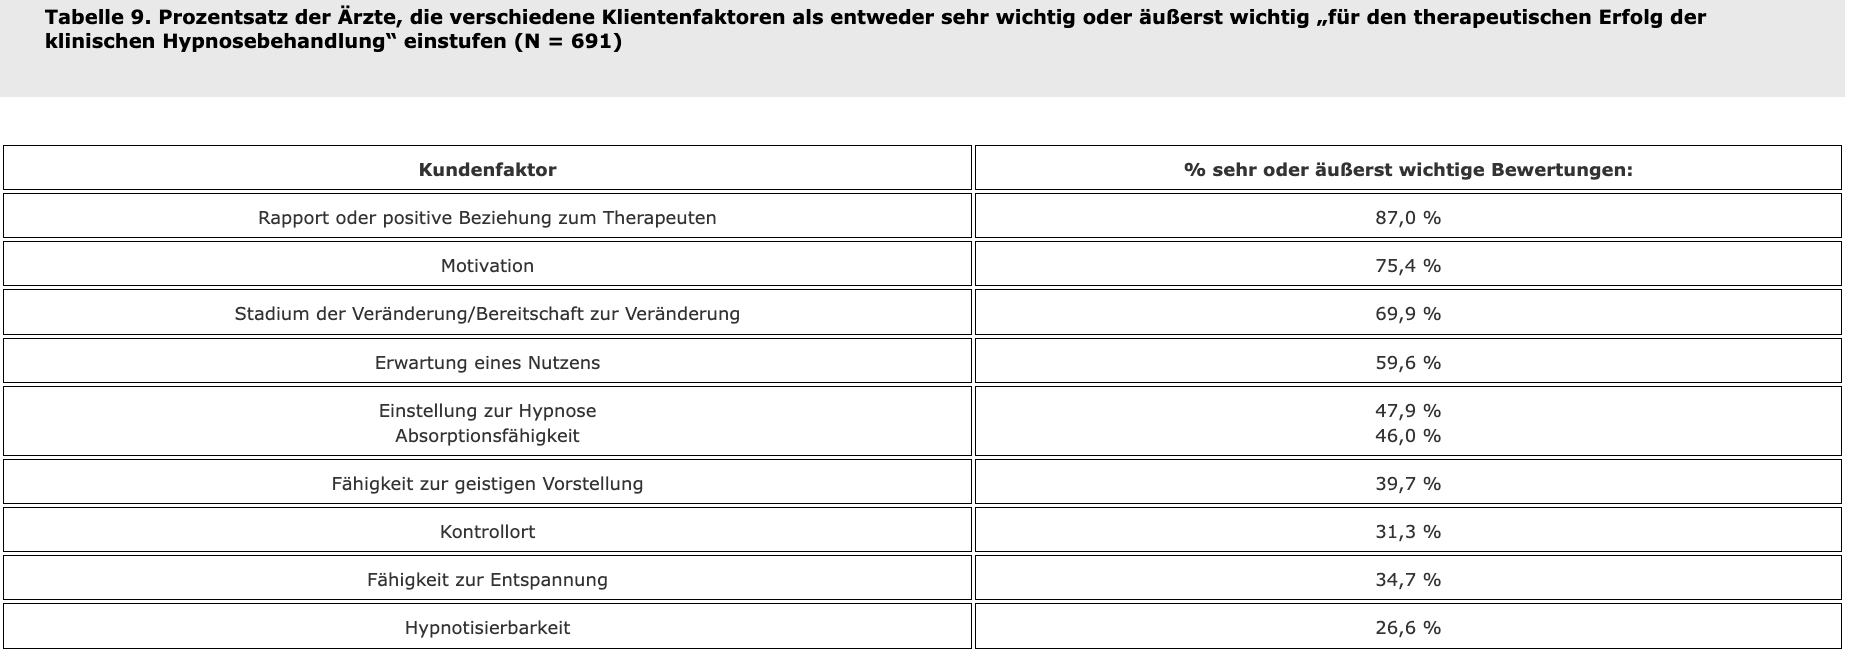 Tabelle 9. Prozentsatz der Ärzte, die verschiedene Klientenfaktoren als entweder sehr wichtig oder äußerst wichtig „für den therapeutischen Erfolg der klinischen Hypnosebehandlung“ einstufen (N = 691)